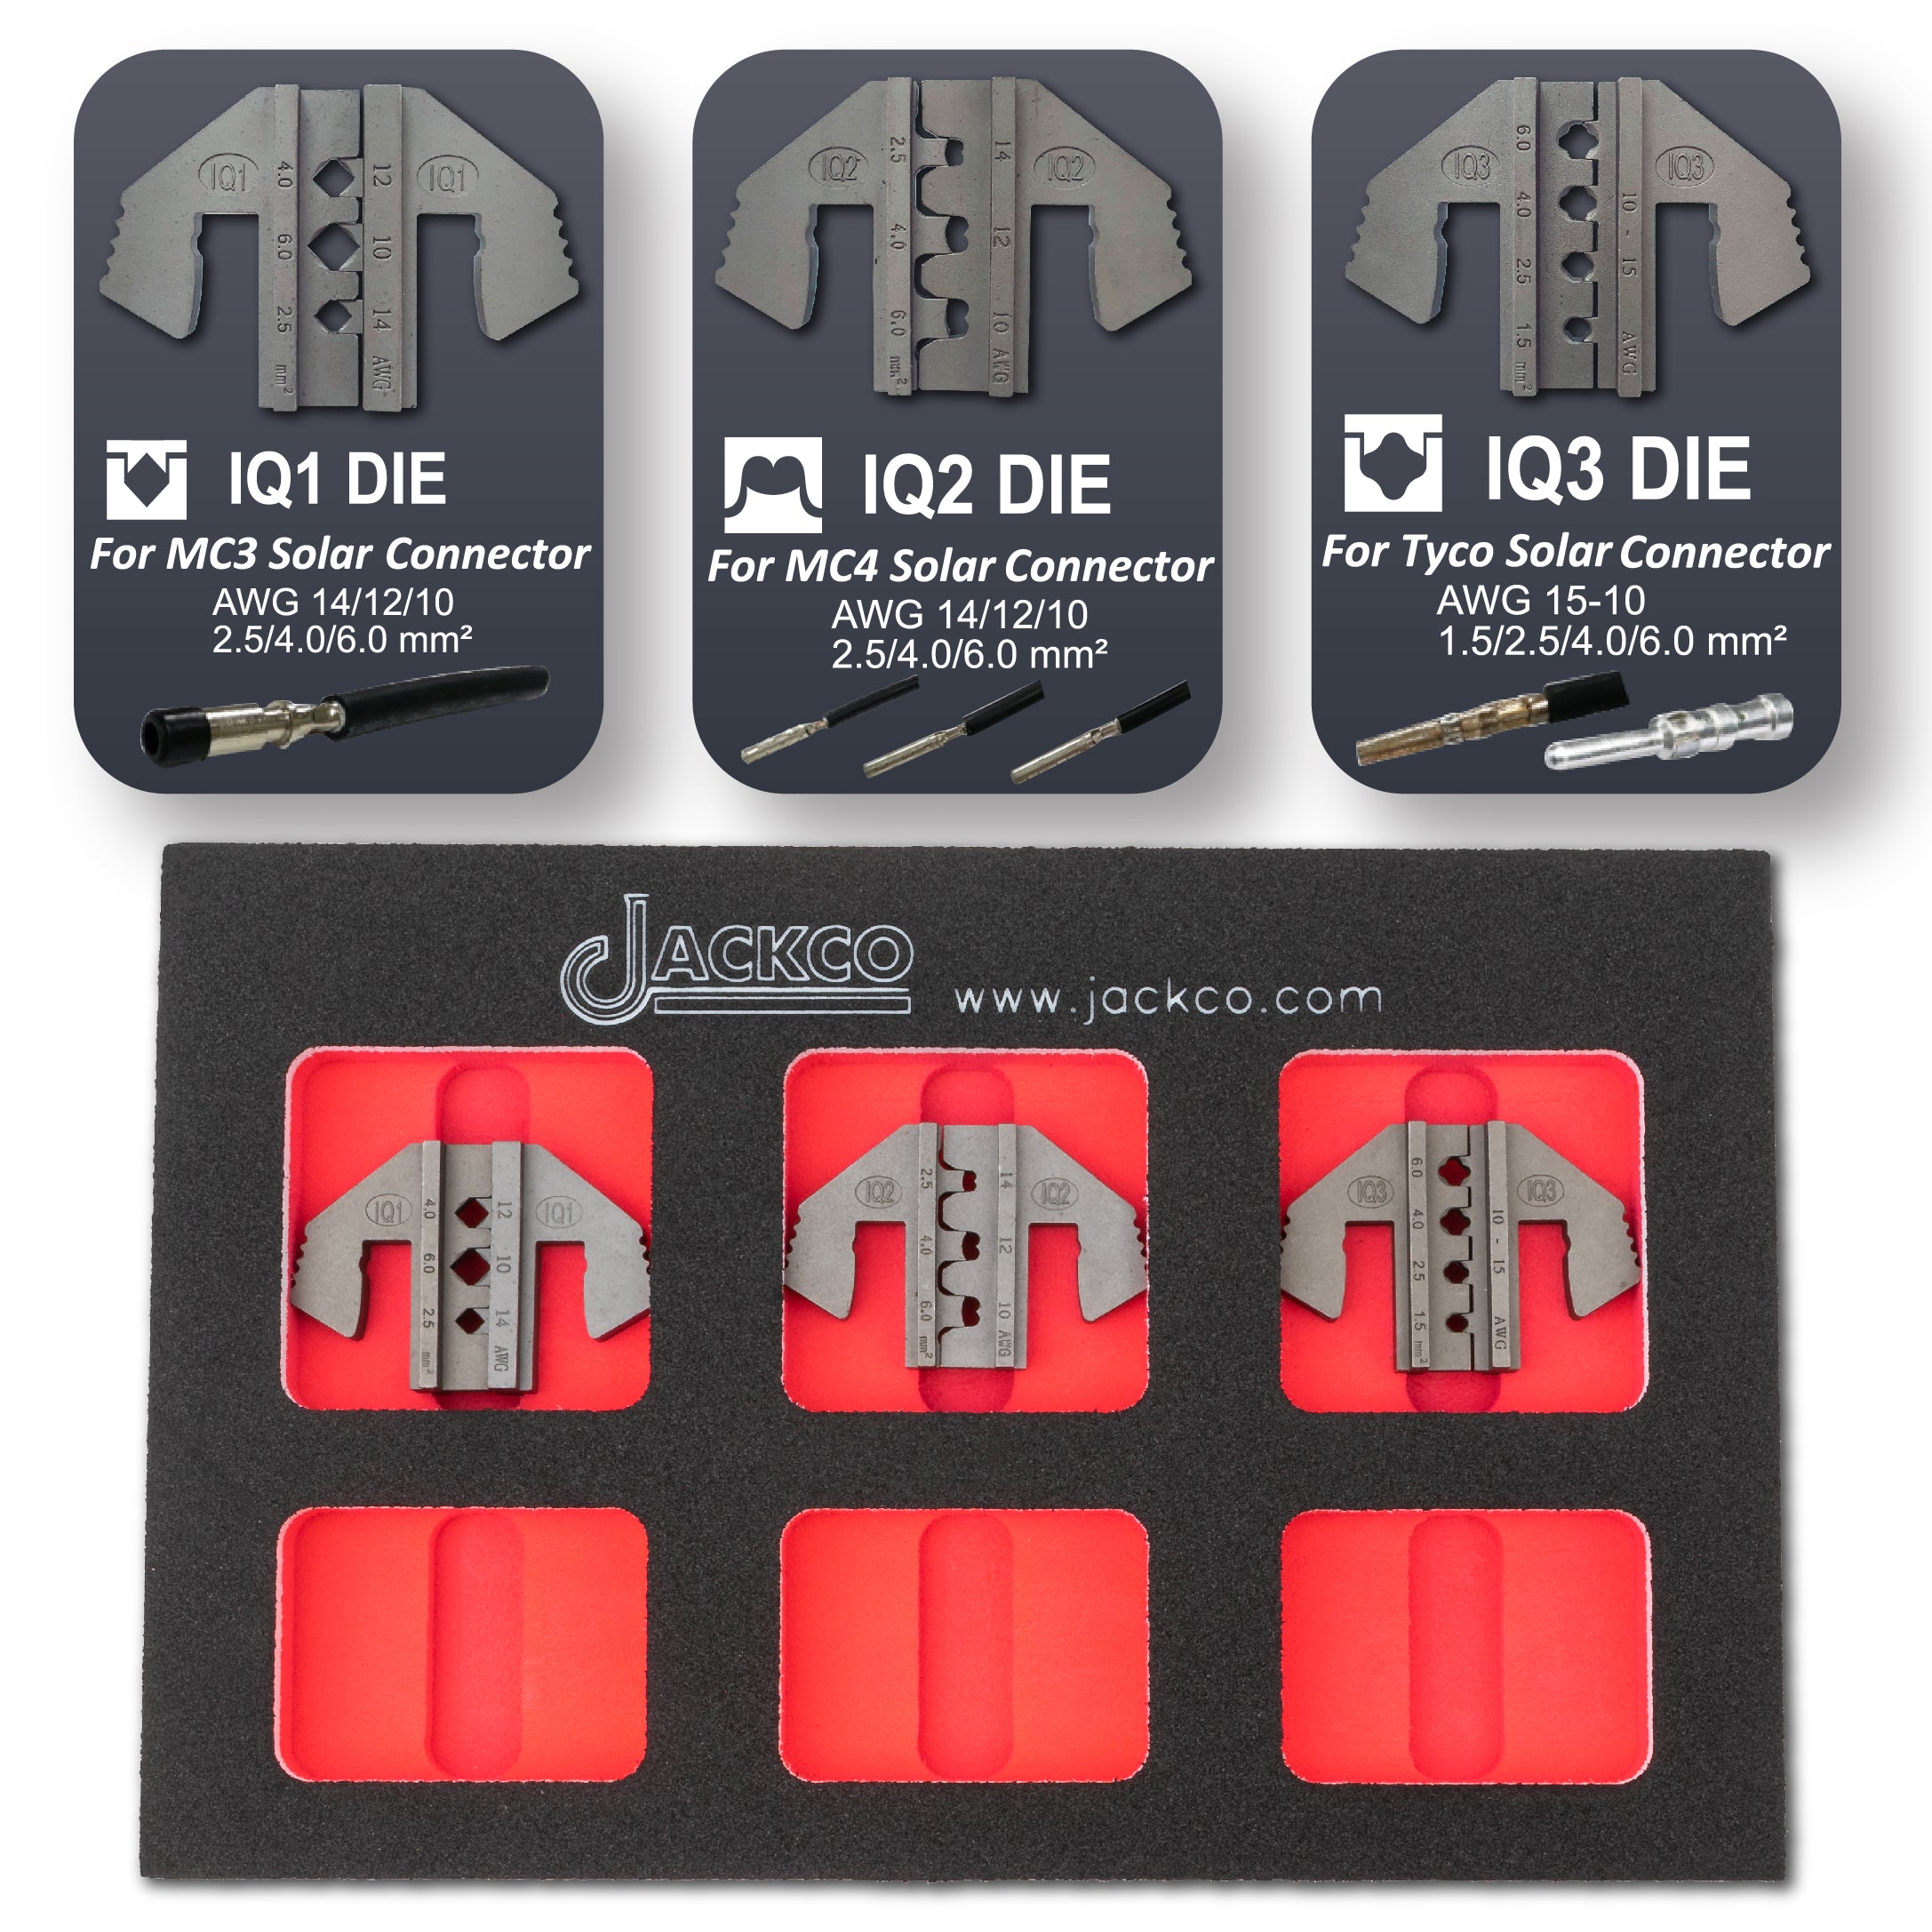 Crimping Tool Die Set - IQ1, IQ2, IQ3 Dies for MC3, MC4, Tyco Solar Connectors